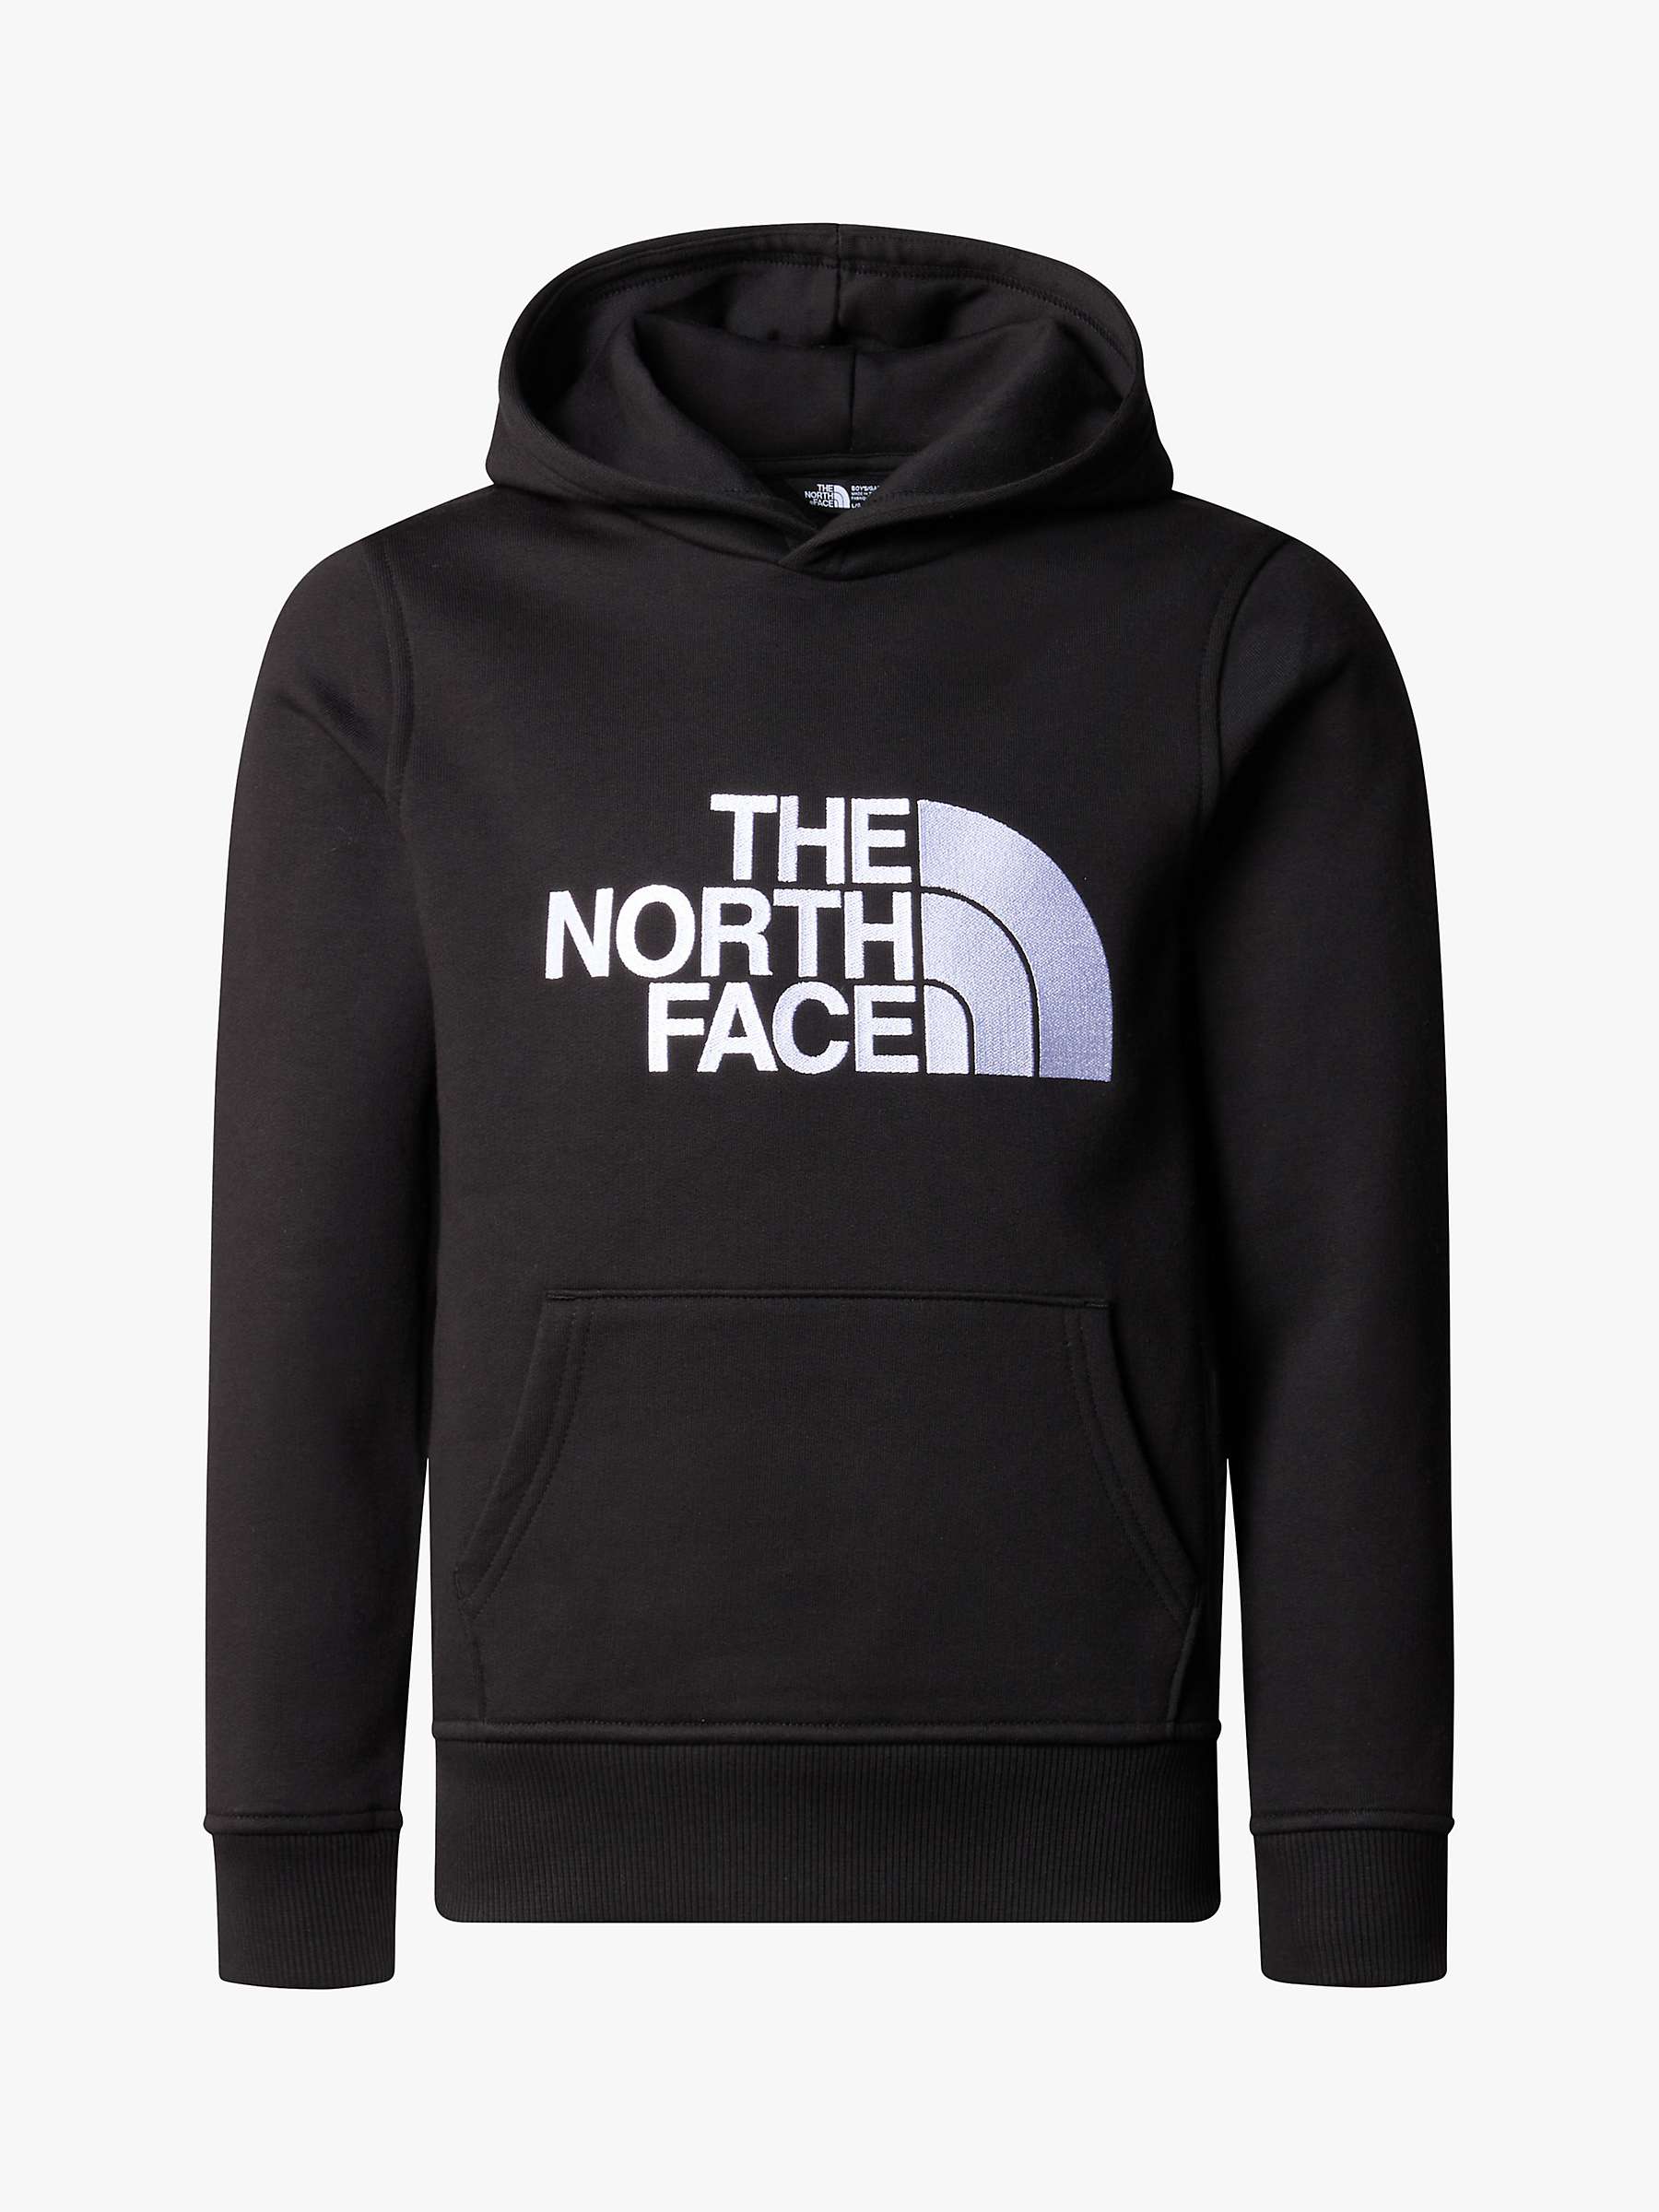 Buy The North Face Kids' Drew Peak Hoody Online at johnlewis.com